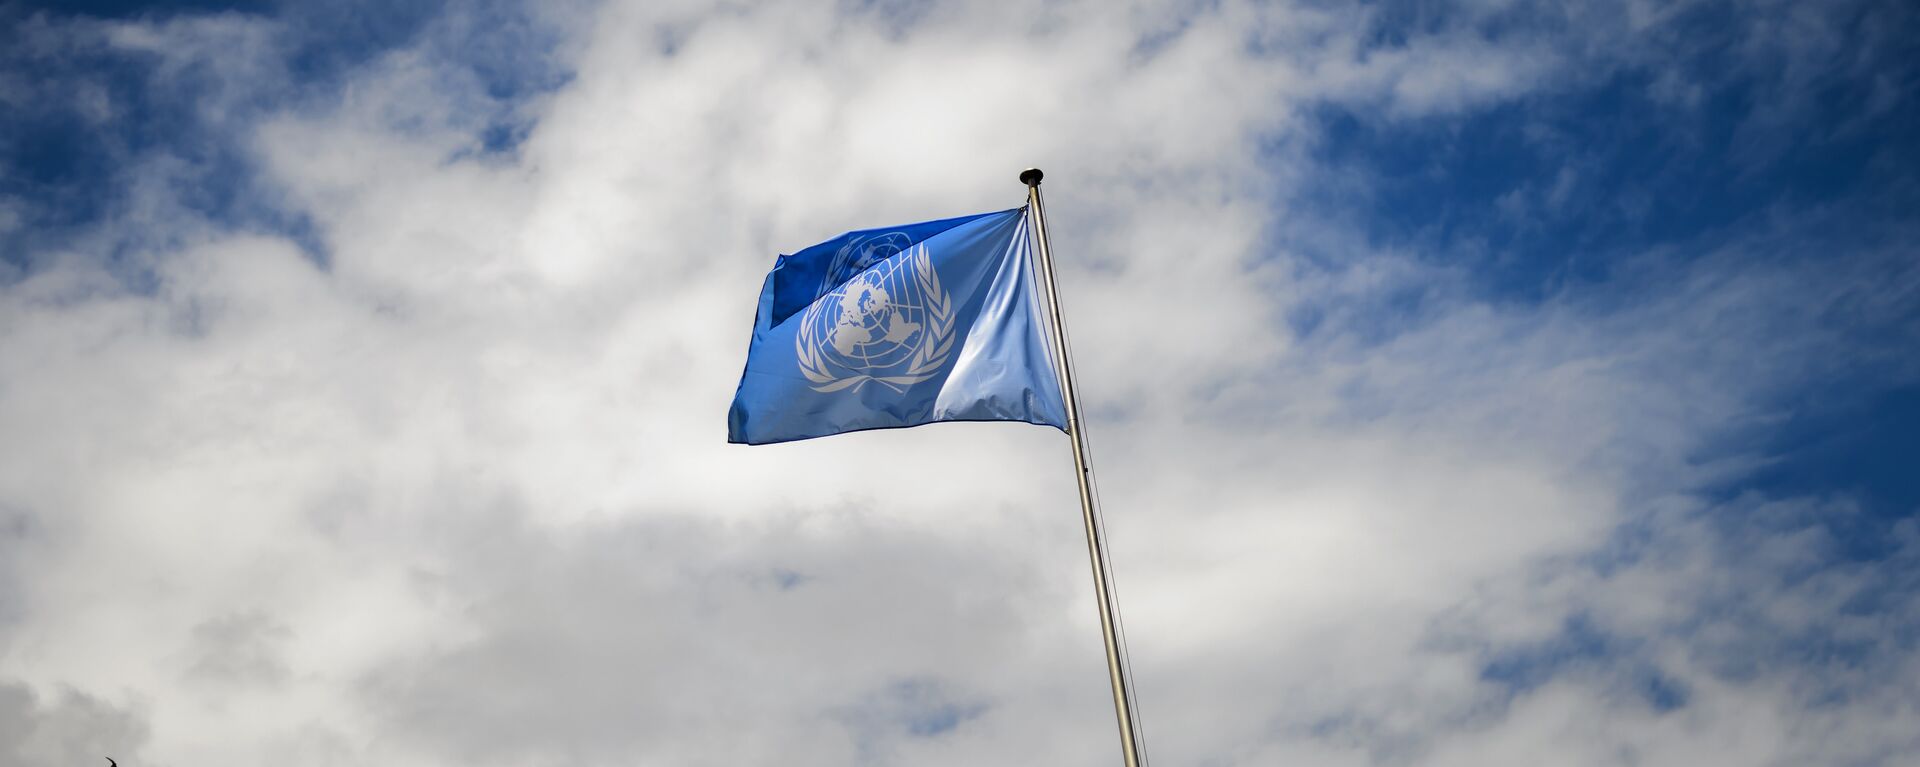 La bandera de la ONU - Sputnik Mundo, 1920, 23.02.2021